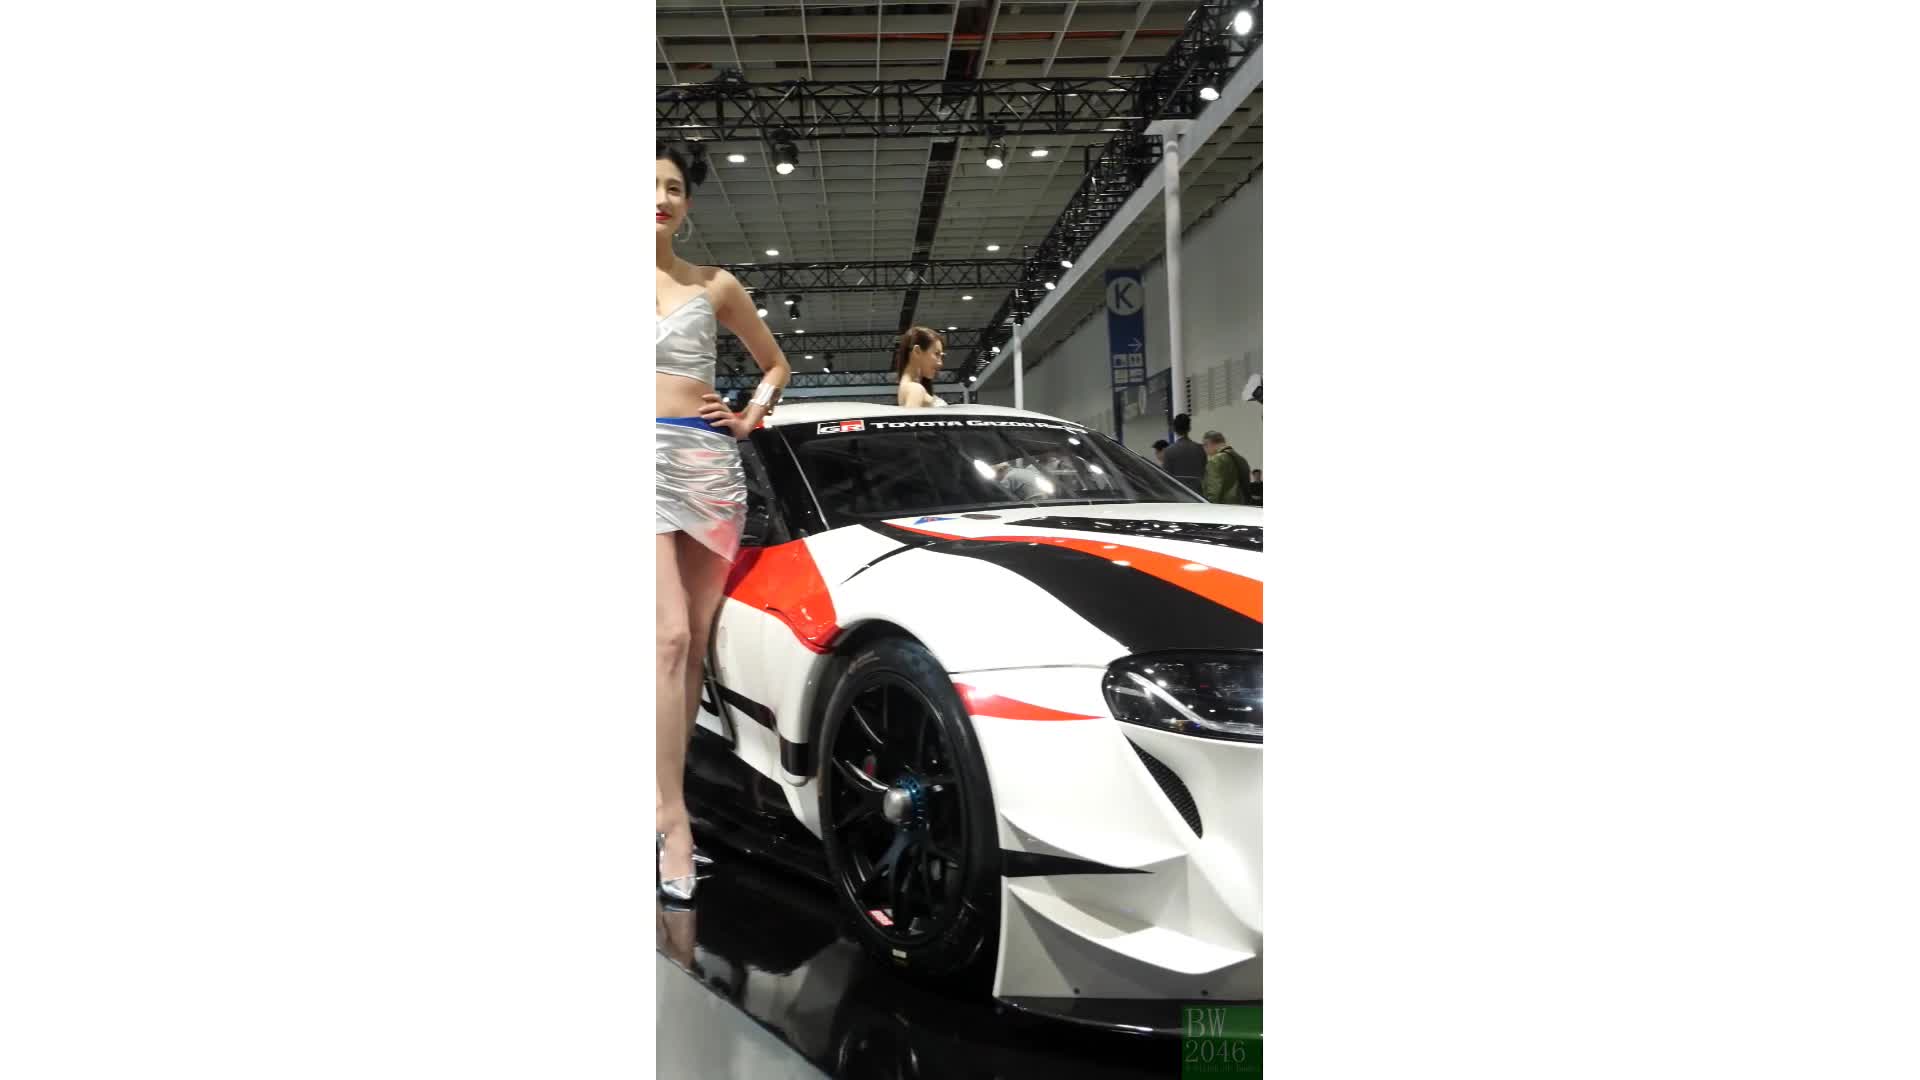 世界新車大展 - 台北車展  Taipei Auto Show 2020 - 車模 28 김연진 金淵珍 Jina @ TOYOTA Gazoo Racing (Desktop Version)